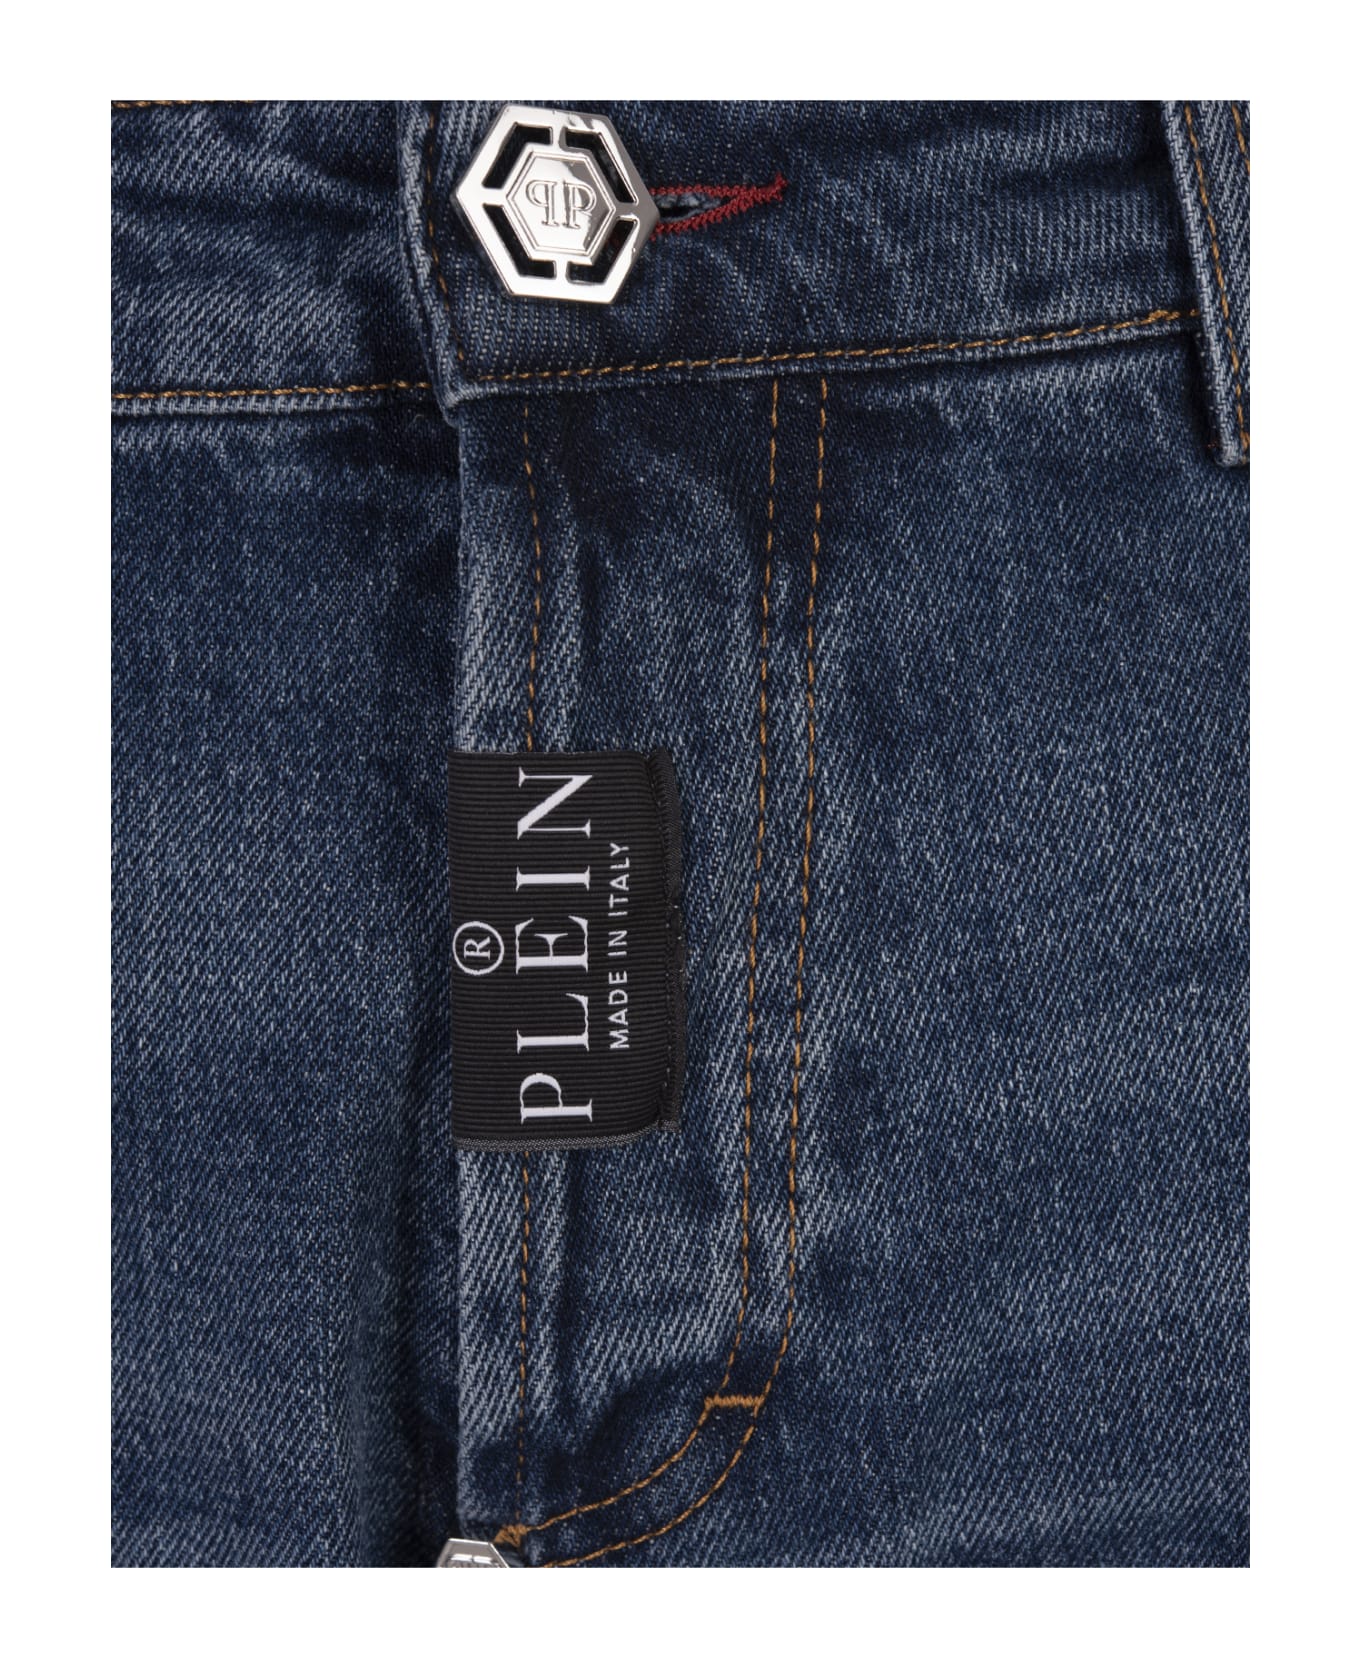 Philipp Plein Denim Trousers Super Straight Cut Premium - Blue